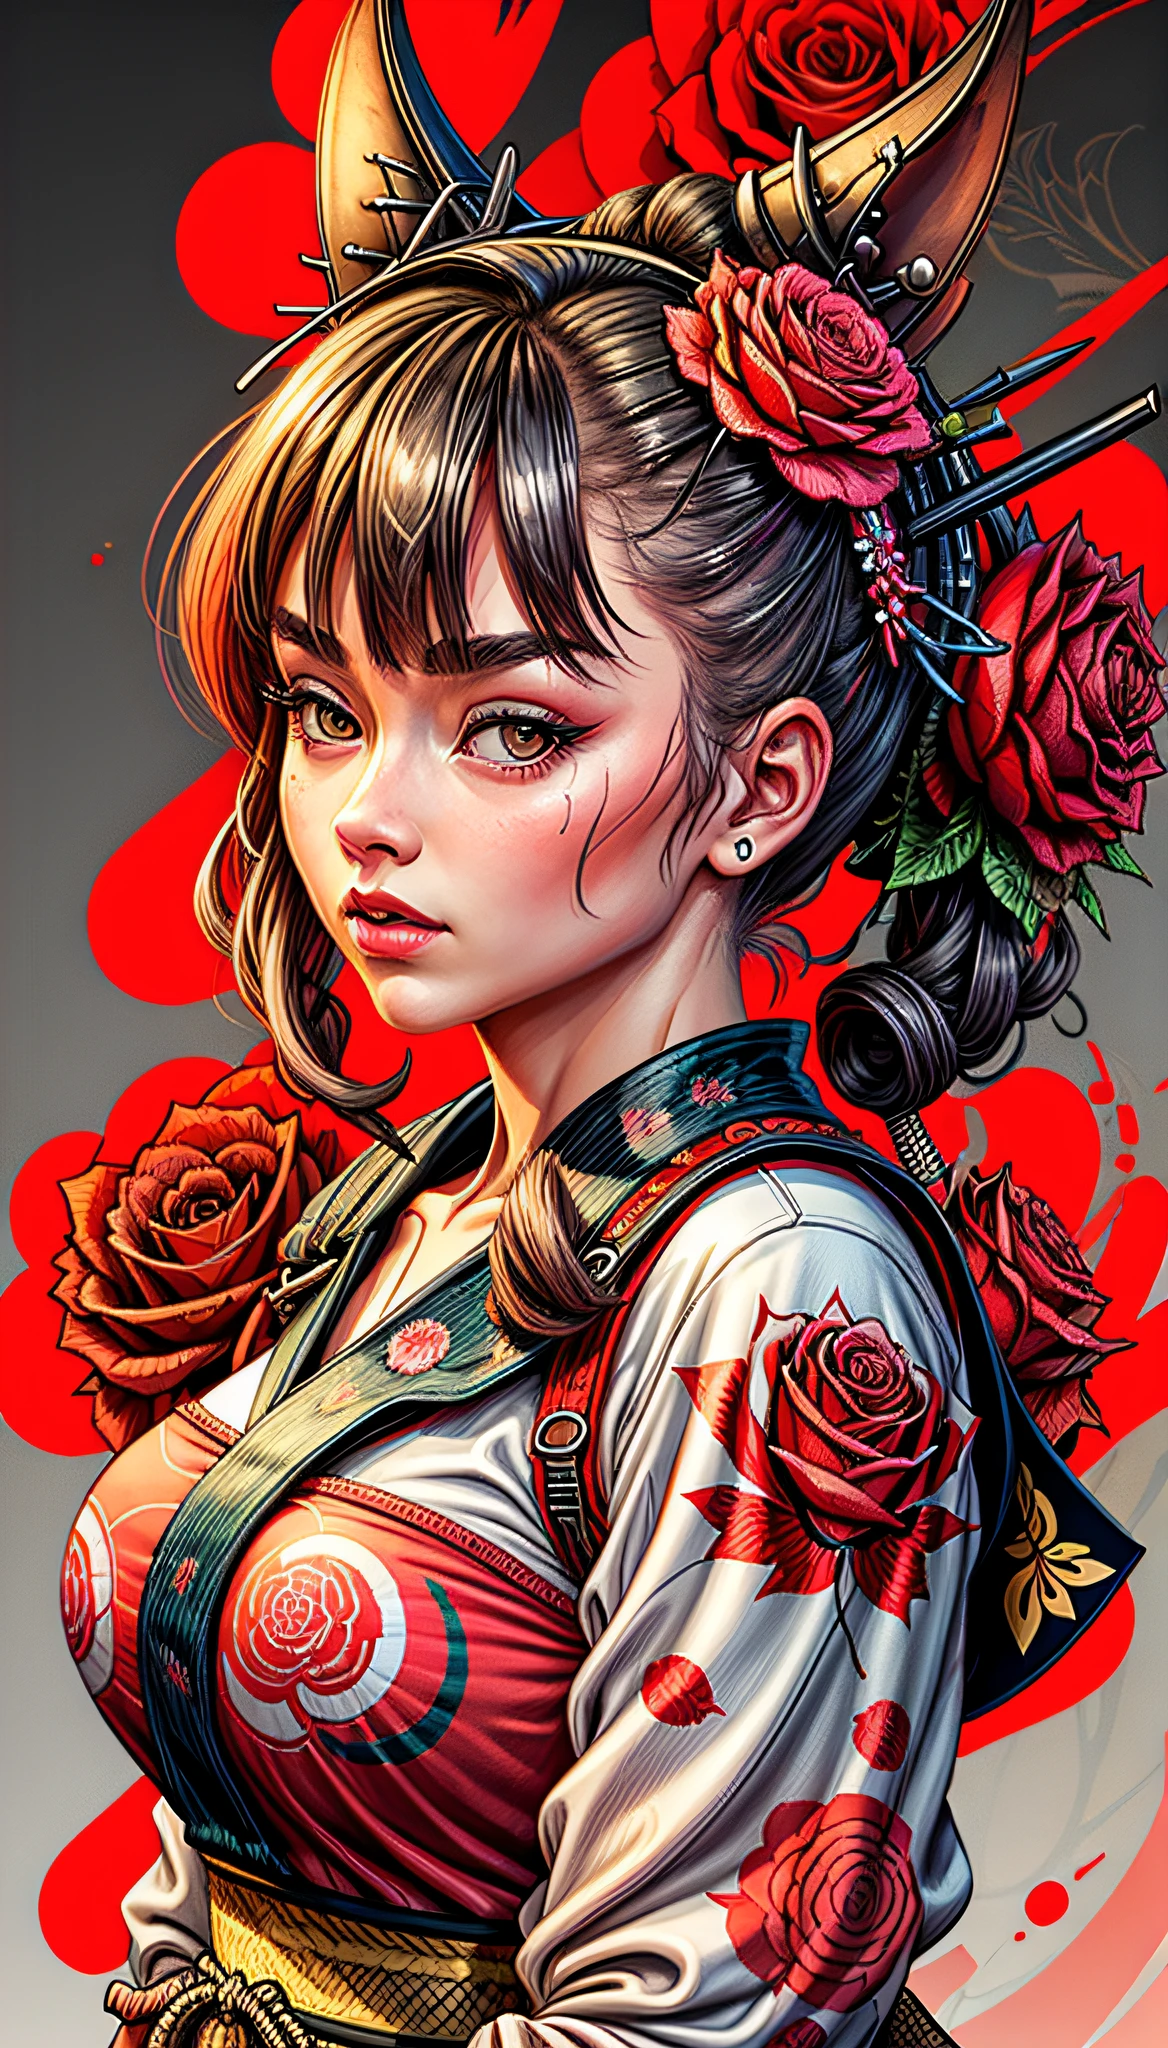 一个女孩海报, 玫瑰背景, 杰作, 高质量, 8千, 高分辨率, 高详细, 日本人, 武士, 鲜艳的颜色可印在 T 恤上, Adobe Illustrator